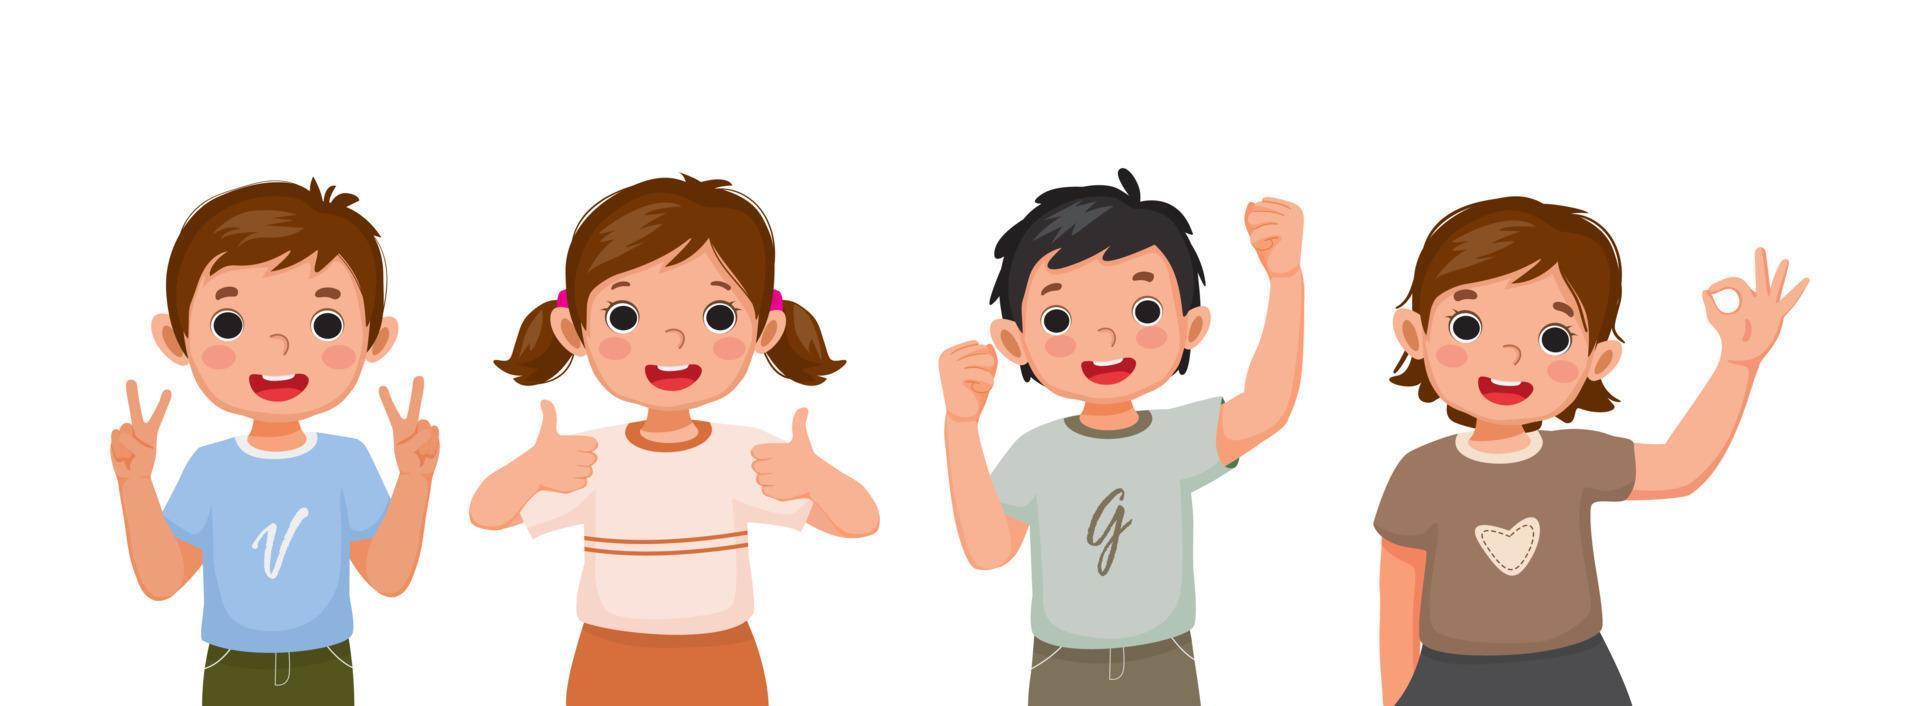 schattige gelukkige kinderen met verschillende positieve emoties, gevoelens, opgewonden gezichtsuitdrukkingen, duim omhoog handgebaren, zoals vuistpomp succes ja teken, zelfvertrouwen en optimistische lichaamstaal vector